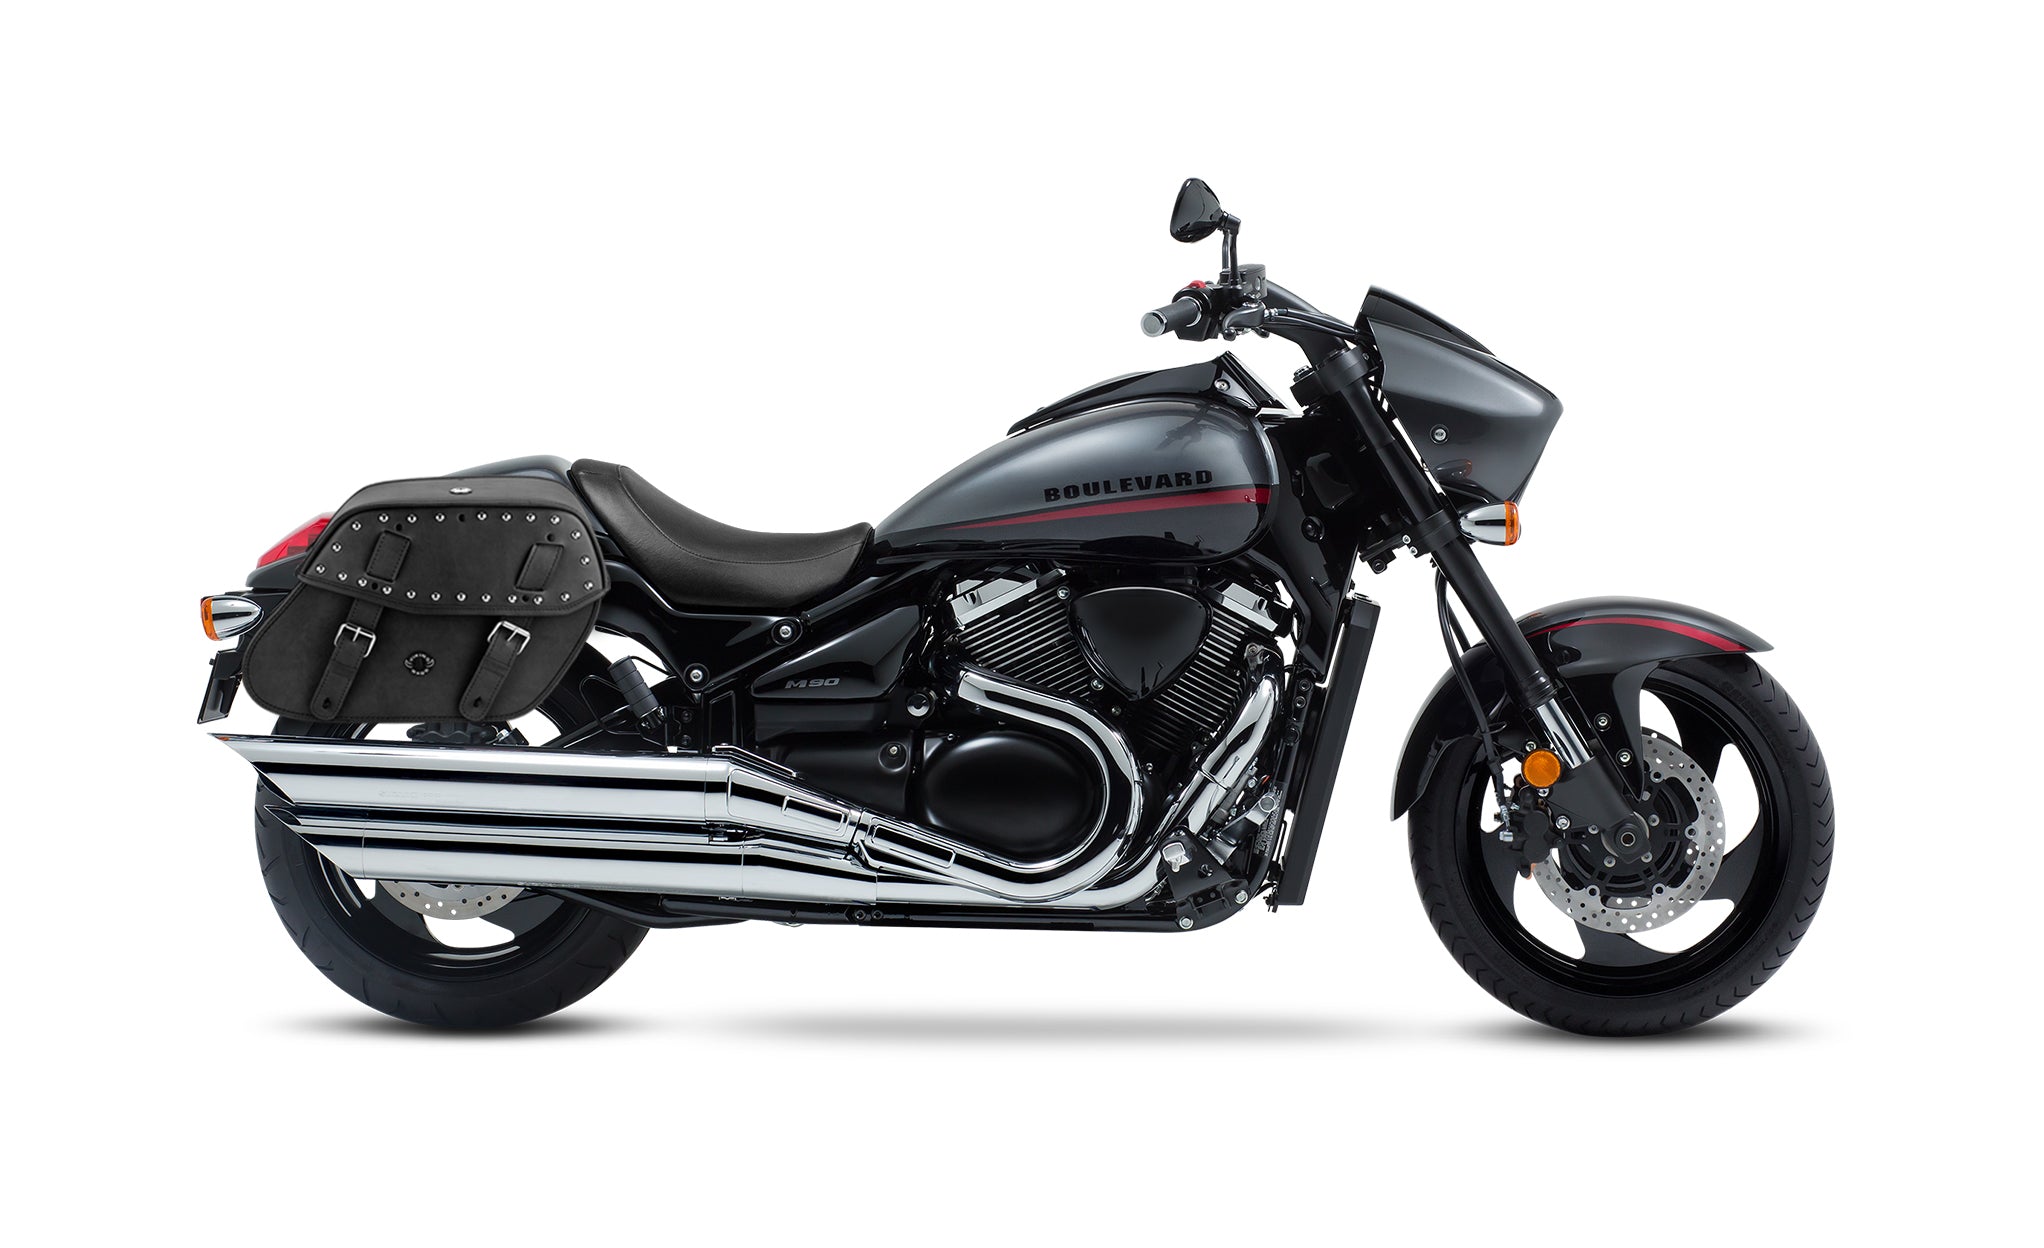 Viking Odin Large Suzuki Boulevard M90 Vz1500 Leather Studded Motorcycle Saddlebags on Bike Photo @expand